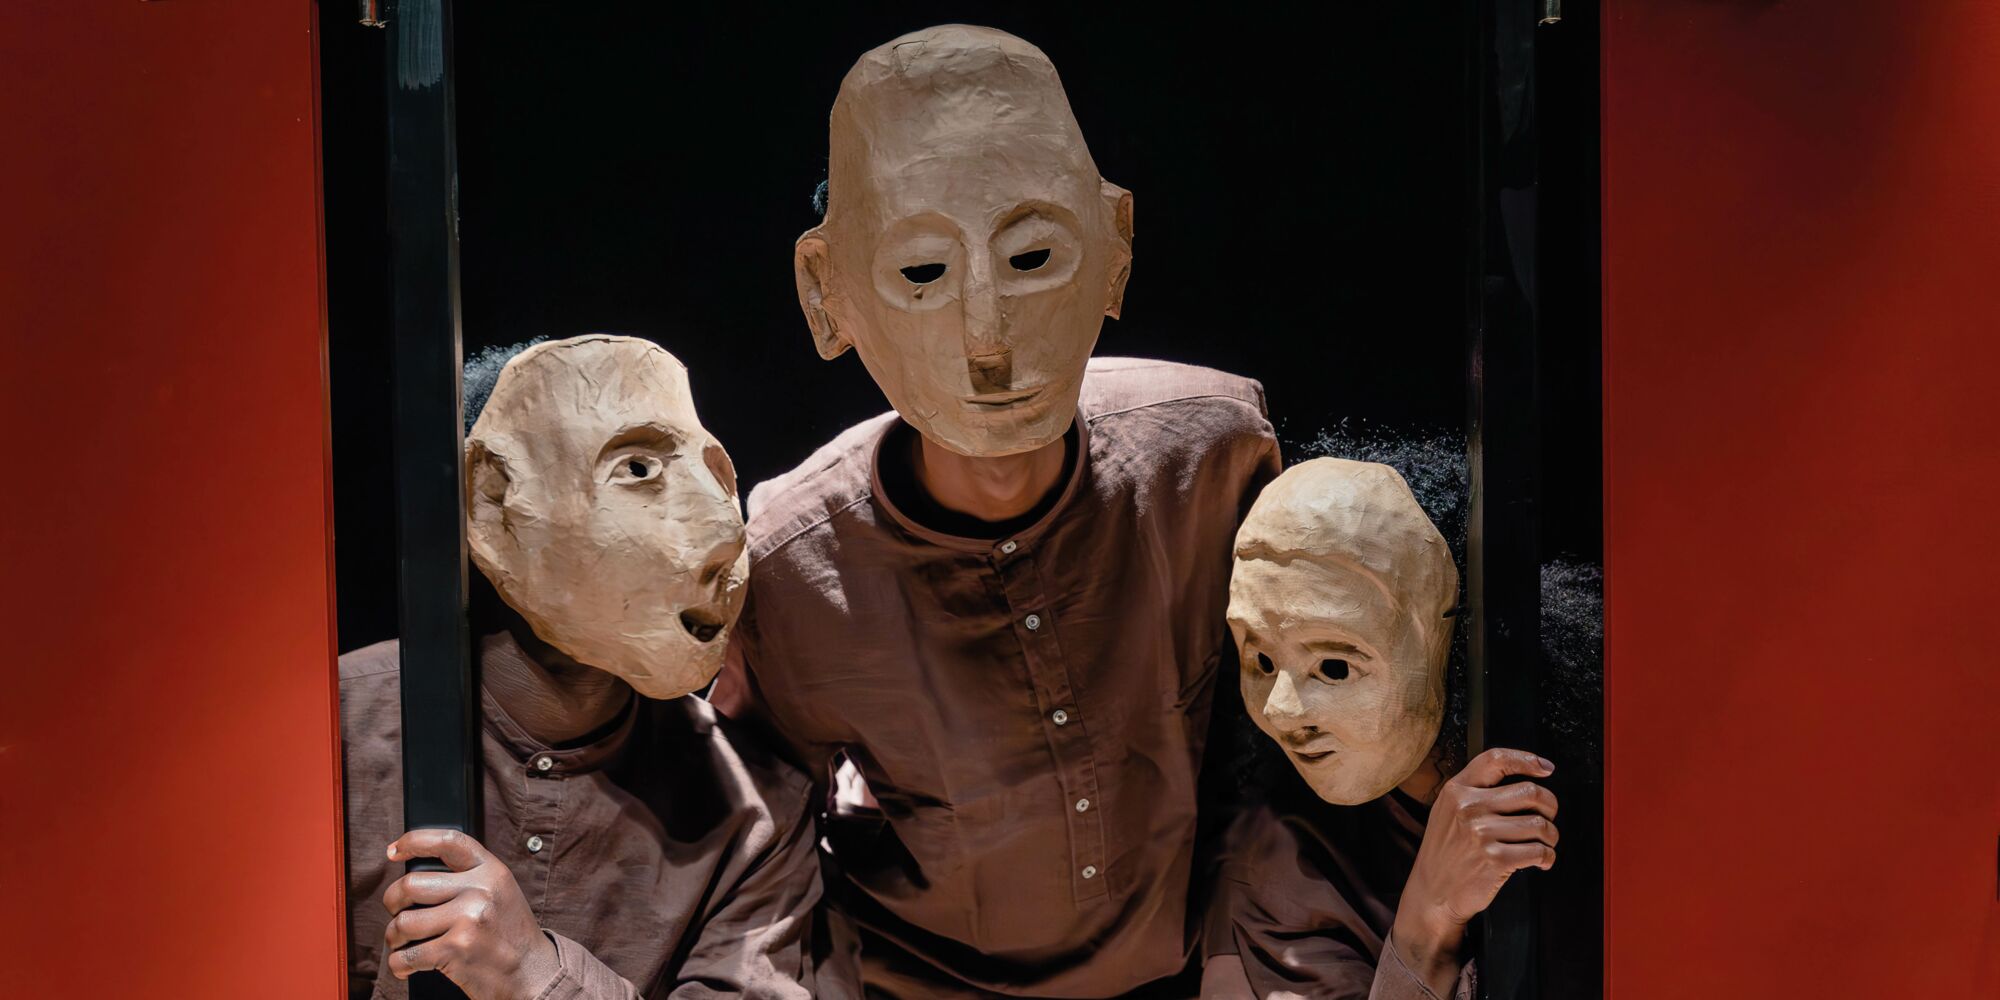 Hier sieht man drei Personen mit braunen Hemden und Masken, die ihre Gesichter komplett verdecken, hinter roten Fensterläden hervorspähend.